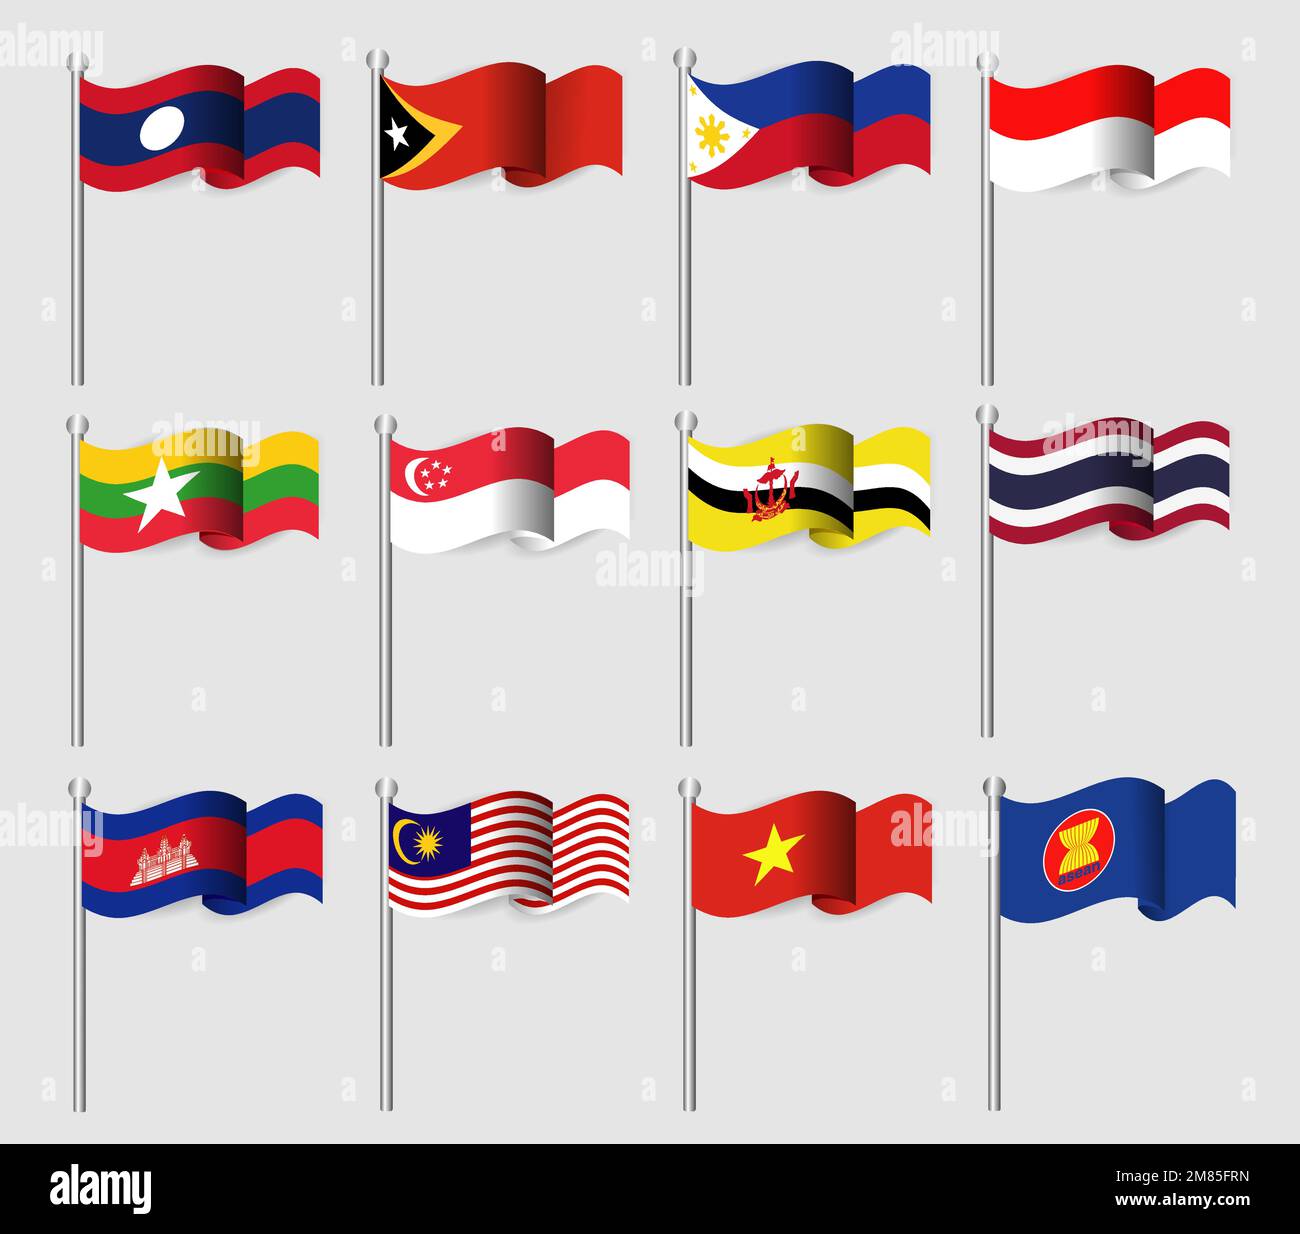 ASEAN. Verband der Südostasiatischen Nationen und Mitgliedschaft. Wehenden Fahnen Design. Südostasien Karte Hintergrund. Vektor. Stock Vektor